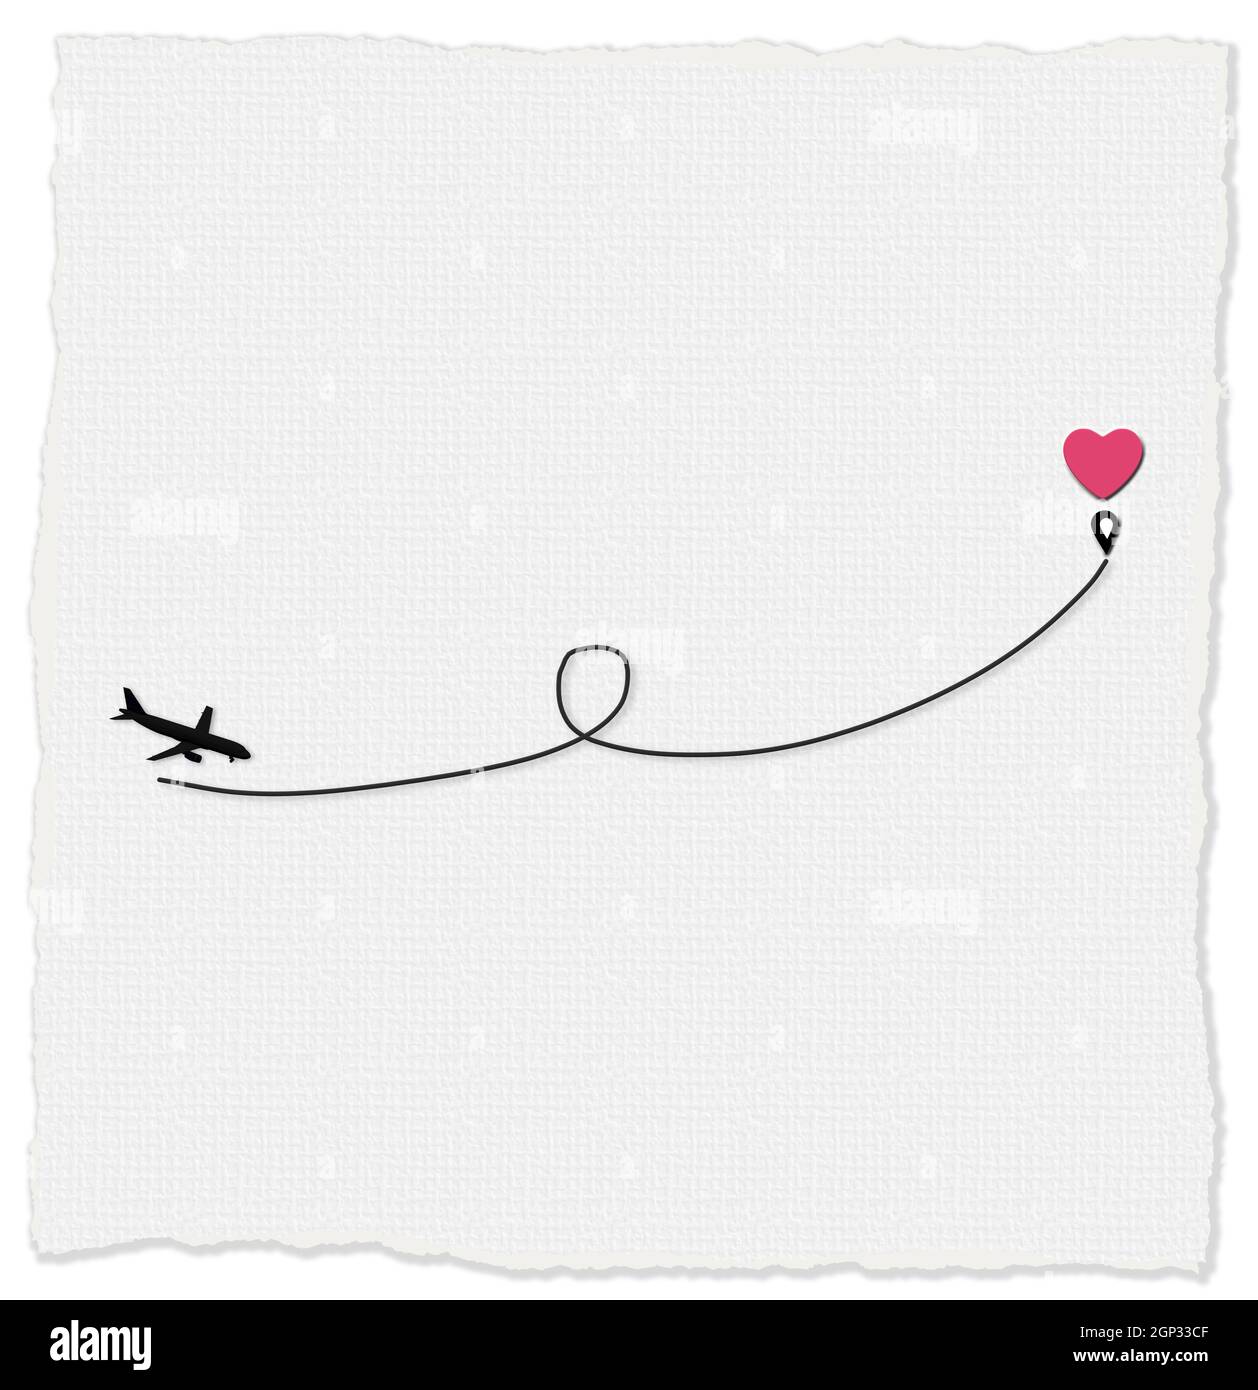 J'adore l'itinéraire de l'avion jusqu'à la destination point coeur rose. Voyage romantique, coeur, route de l'avion, chemin. Carte de Saint-Valentin, concept d'amour, isolé sur fond blanc Banque D'Images